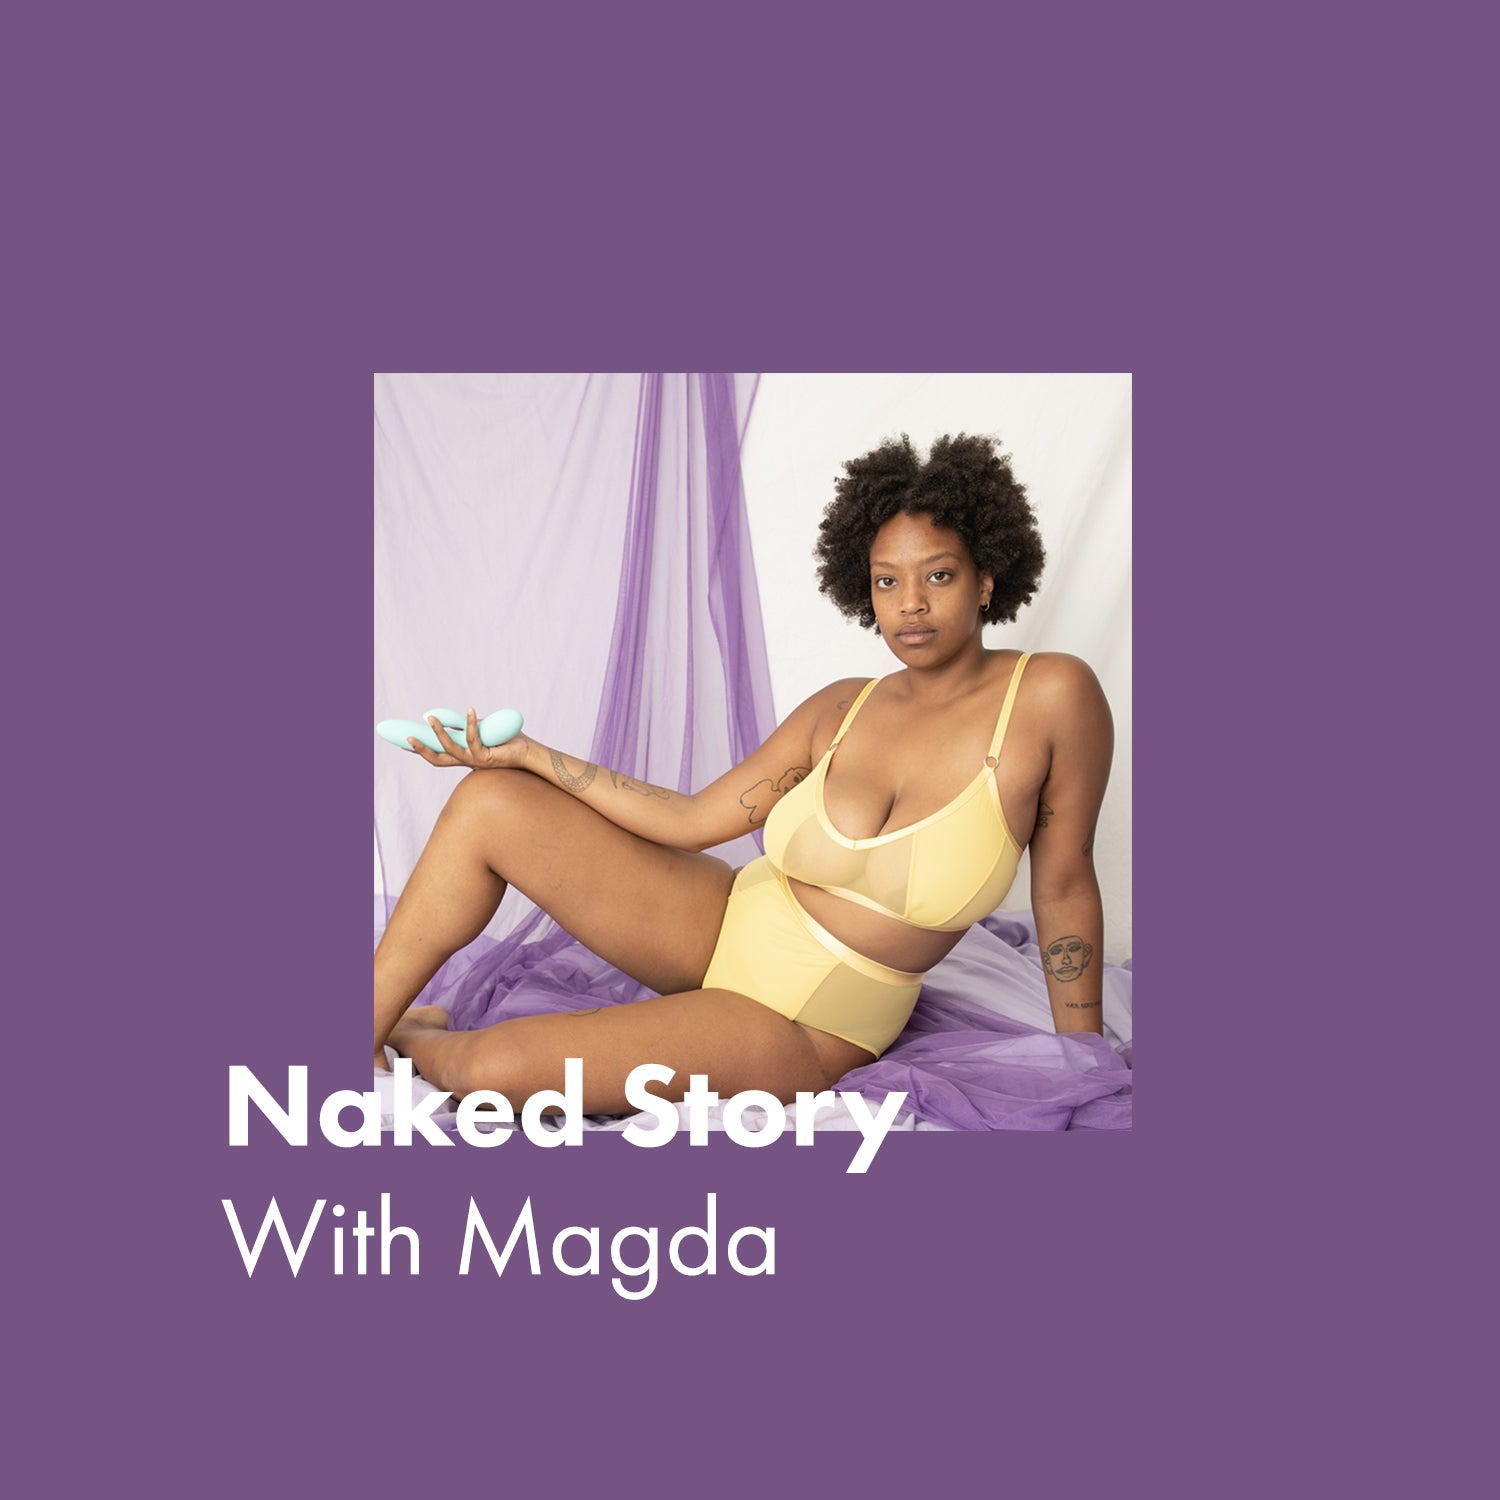 Magda's Naked Story